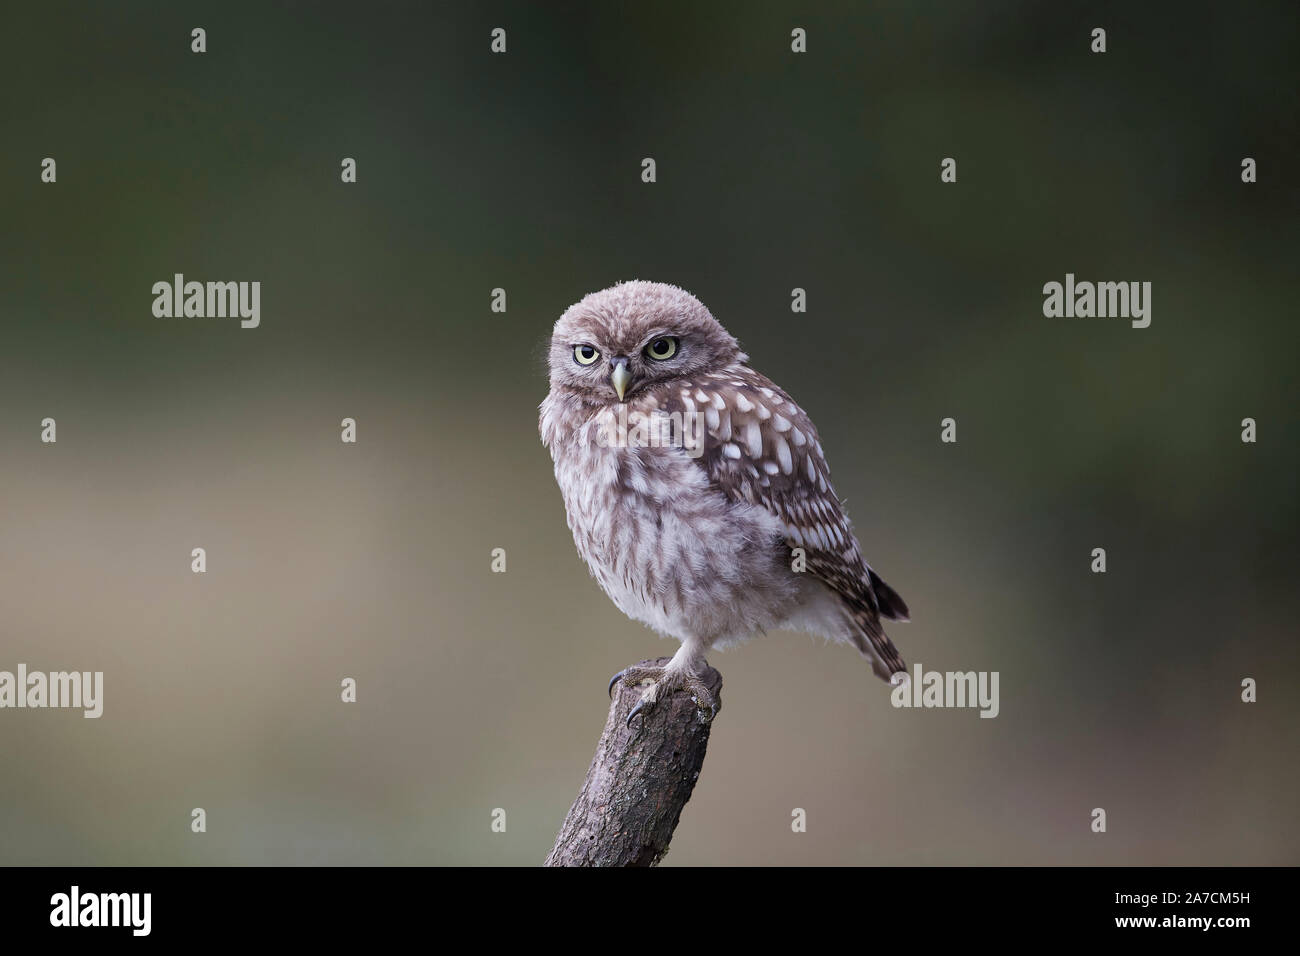 Pequena Owl owlet, Athene noctua en una percha después de sólo fleding desde el nido. Foto de stock